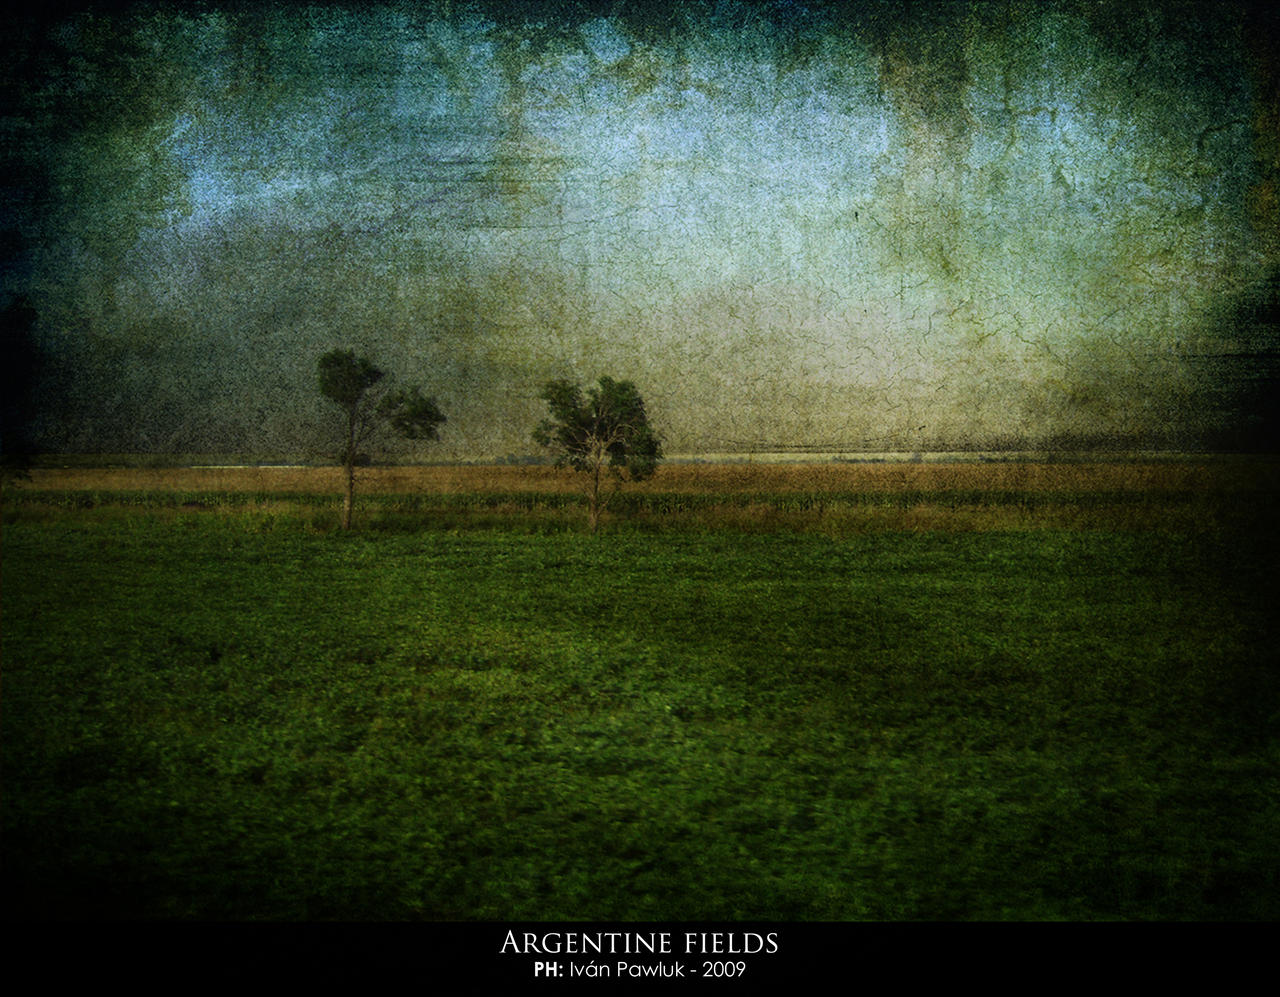 Argentine fields